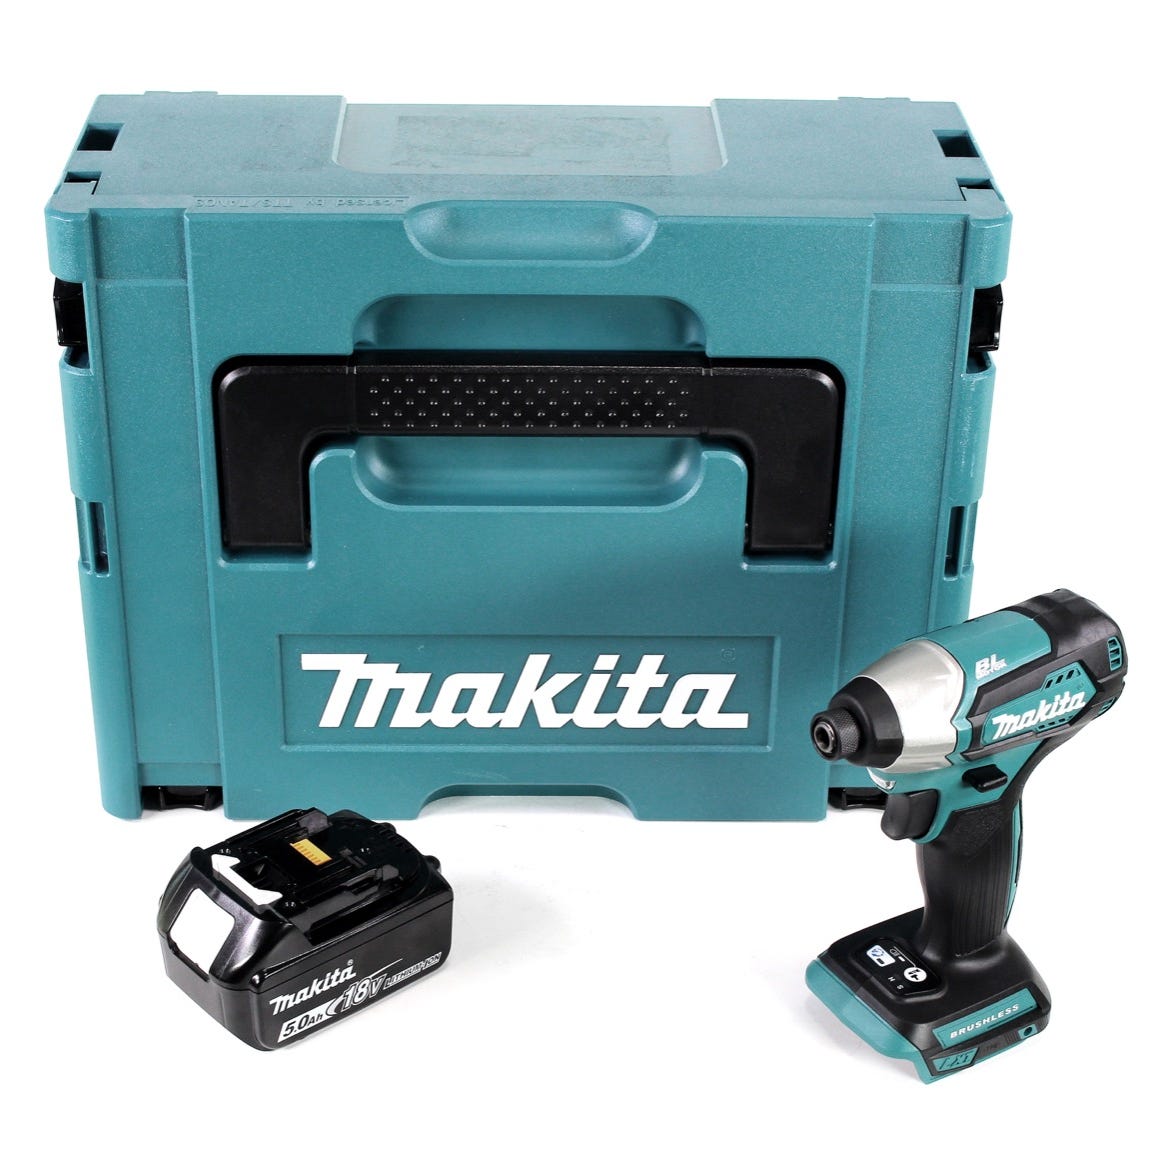 Makita DTD 155 RT1 Visseuse à percussion sans fil 18 V Brushless Li-Ion en Makpac + 1 x BL1850 5,0 Ah batterie - sans chargeur 0